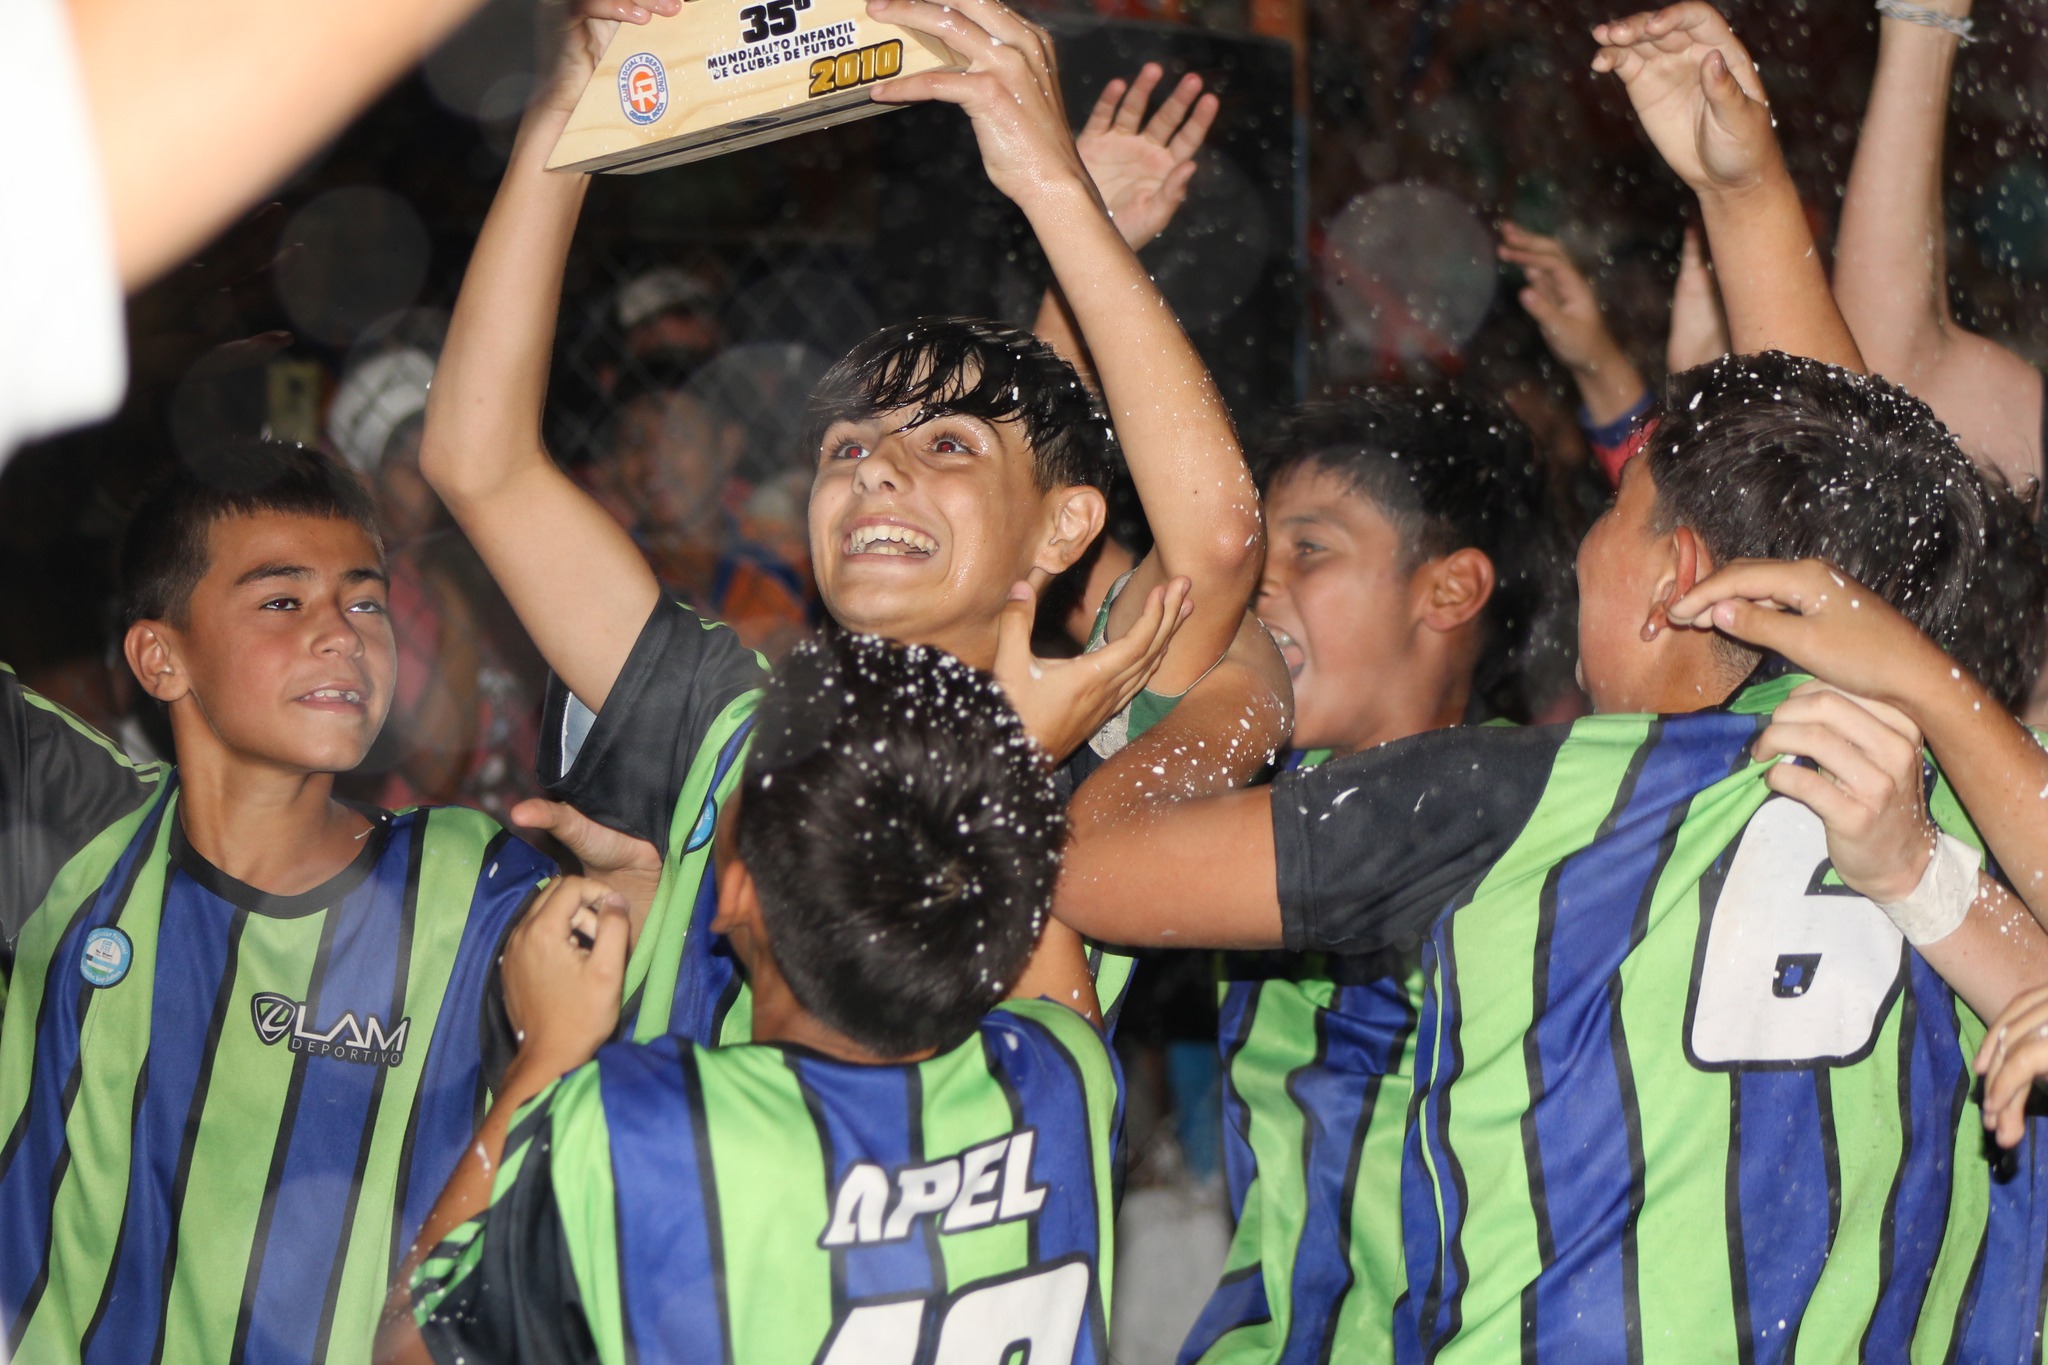 APEL de Viedma levantó el trofeo de la edición 35º del Mundialito en 2023. Fotos: prensa Deportivo Roca 